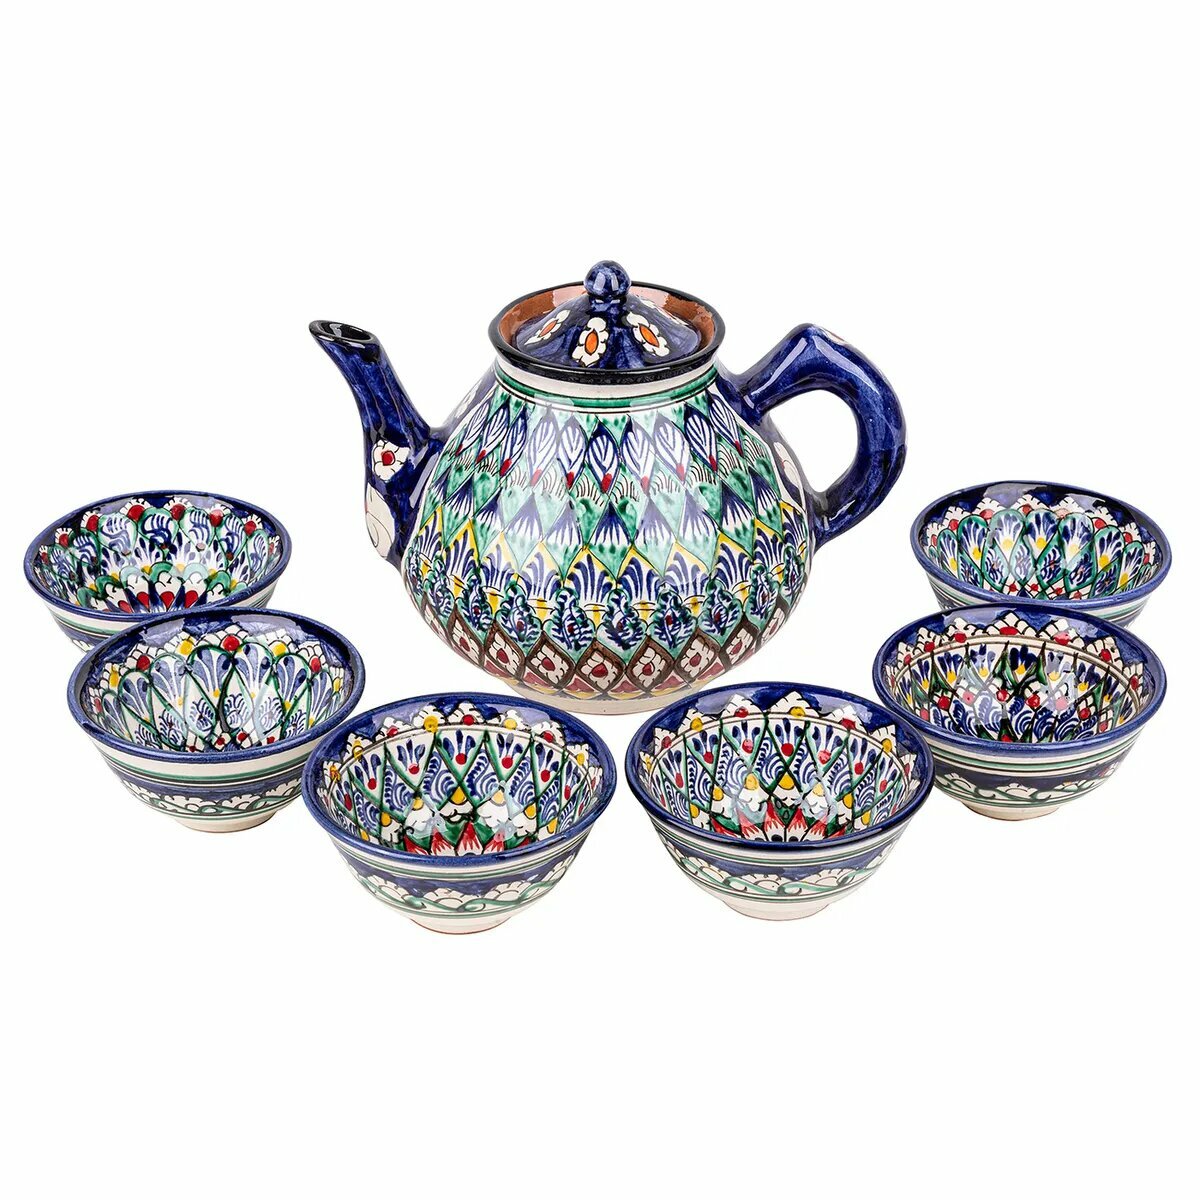 Сервиз узбекской посуды Риштан (7 предметов)